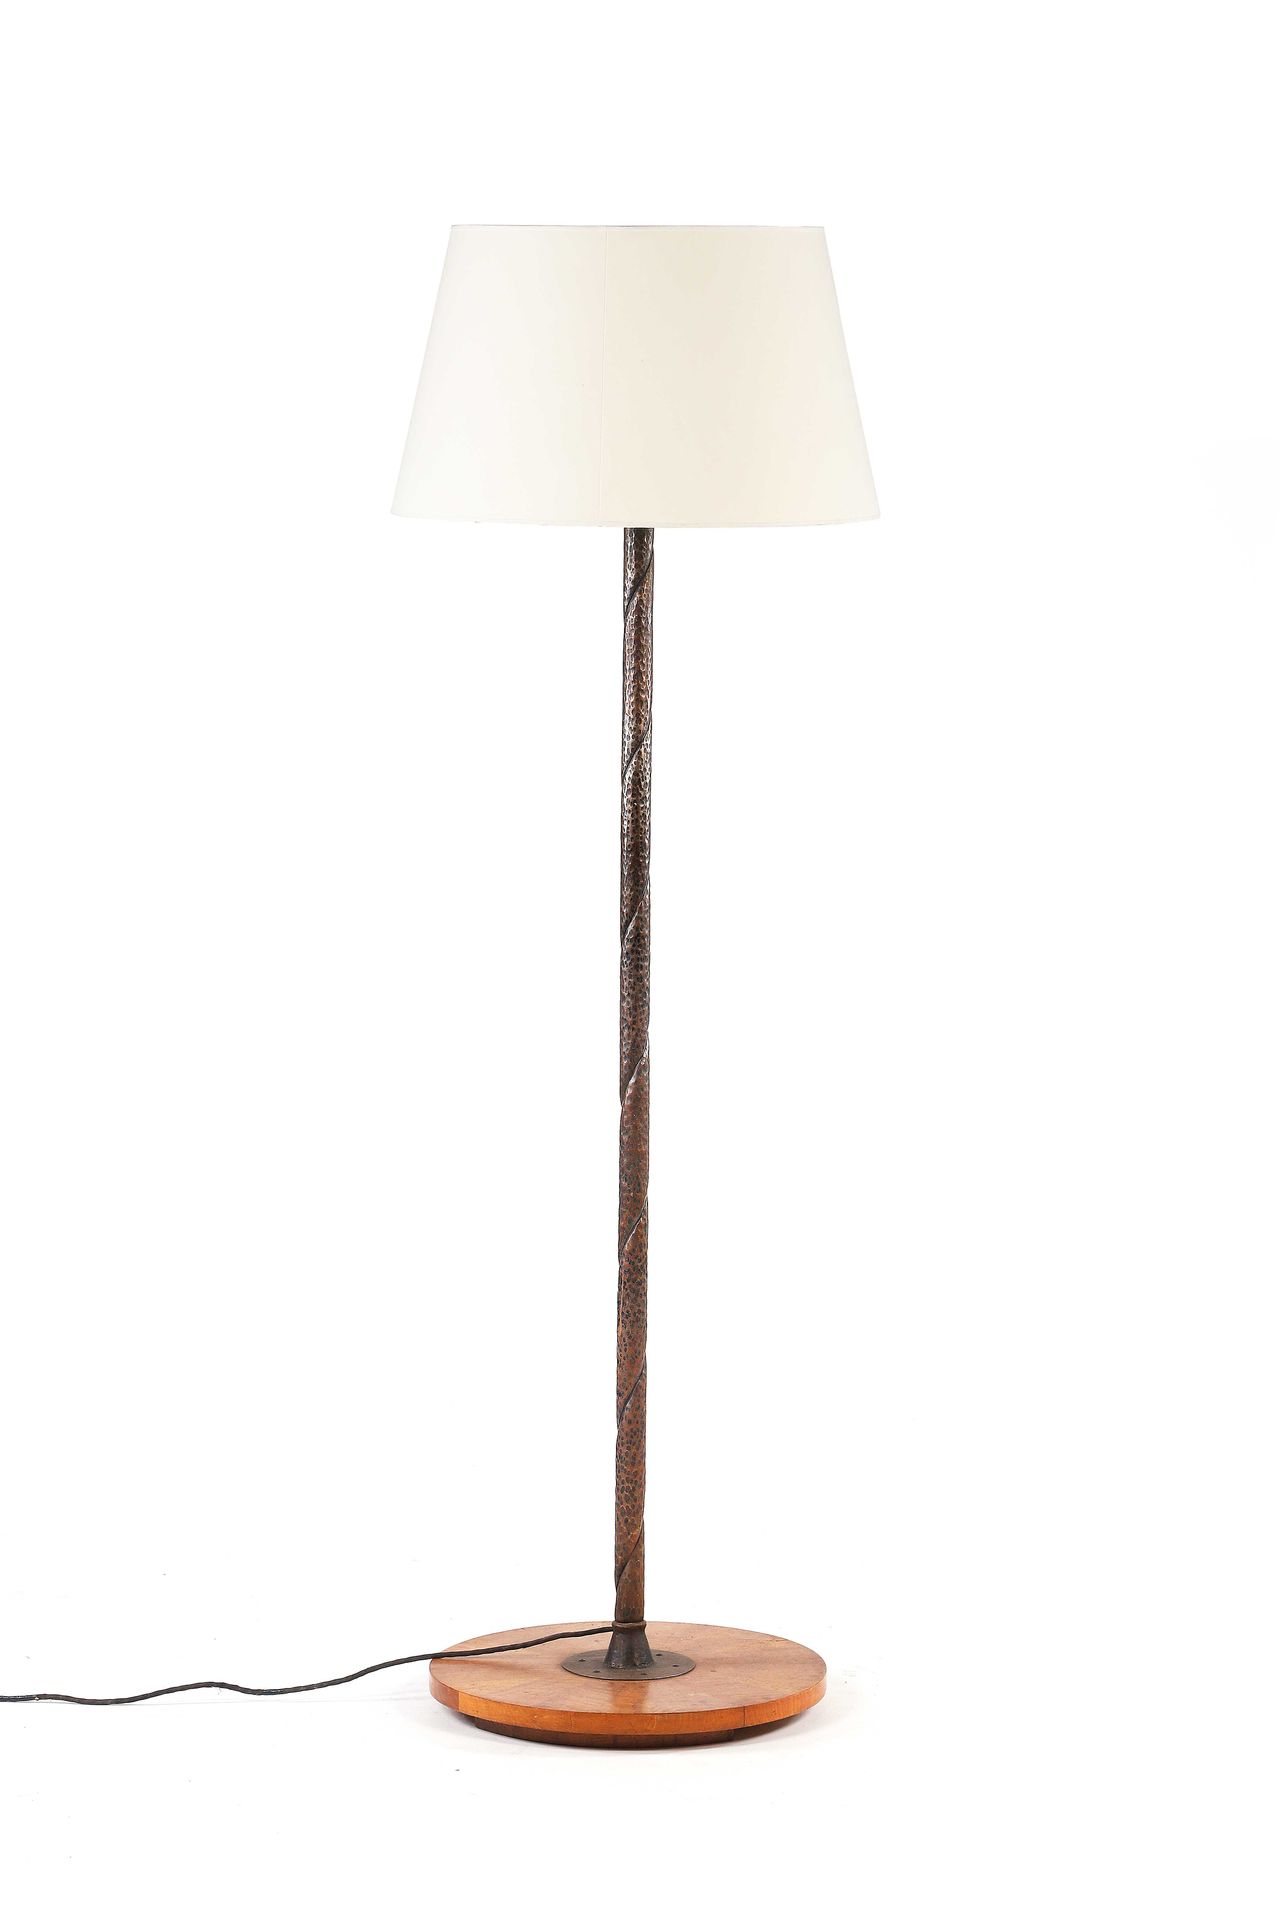 Null 现代主义作品

落地灯 木，铁，织物 高：183厘米。约1930年

落地灯 木头，铁，织物 高：72.05英寸